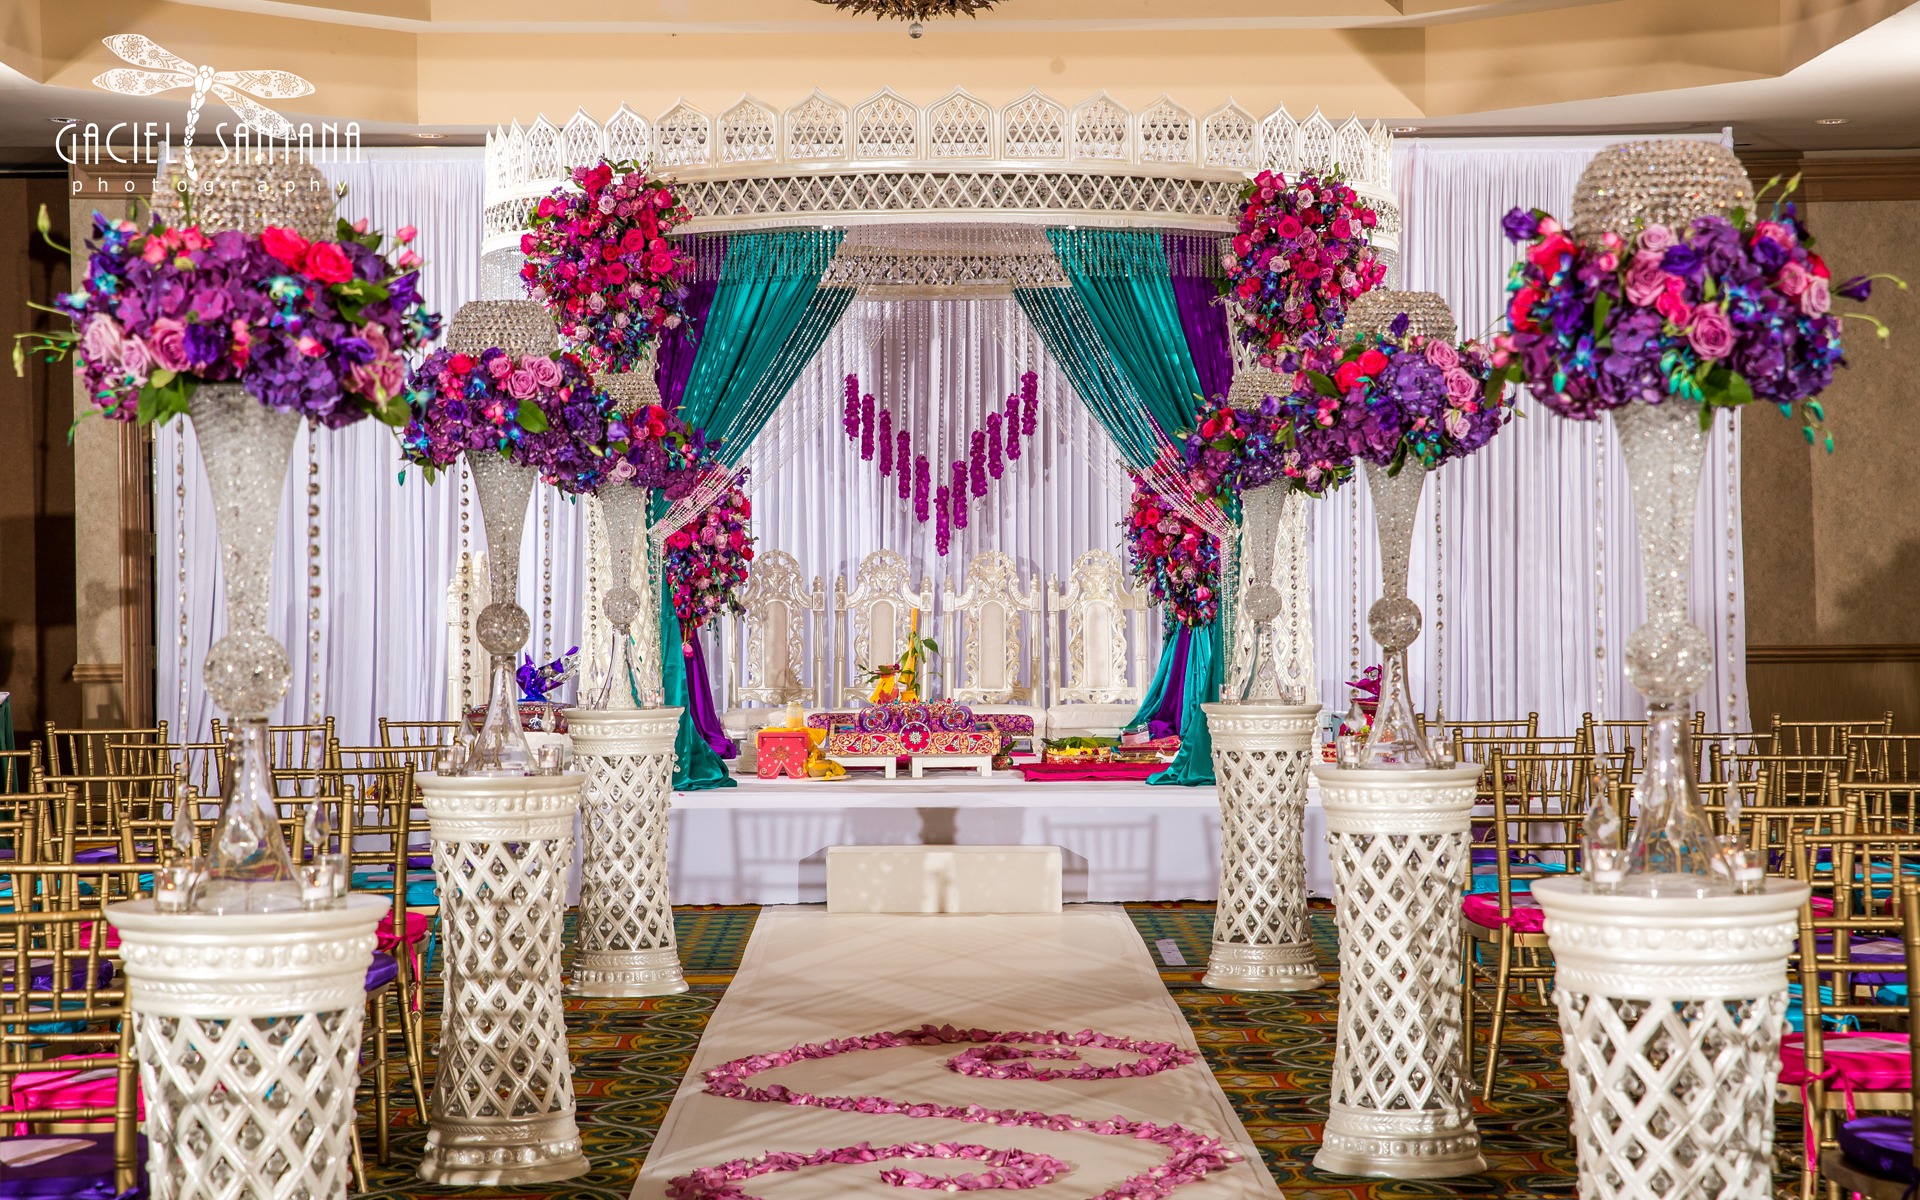 Calypso Ceremony Bollywood Glam 1 South Asian Indian Wedding Design Decor Suhaag Garden Florida